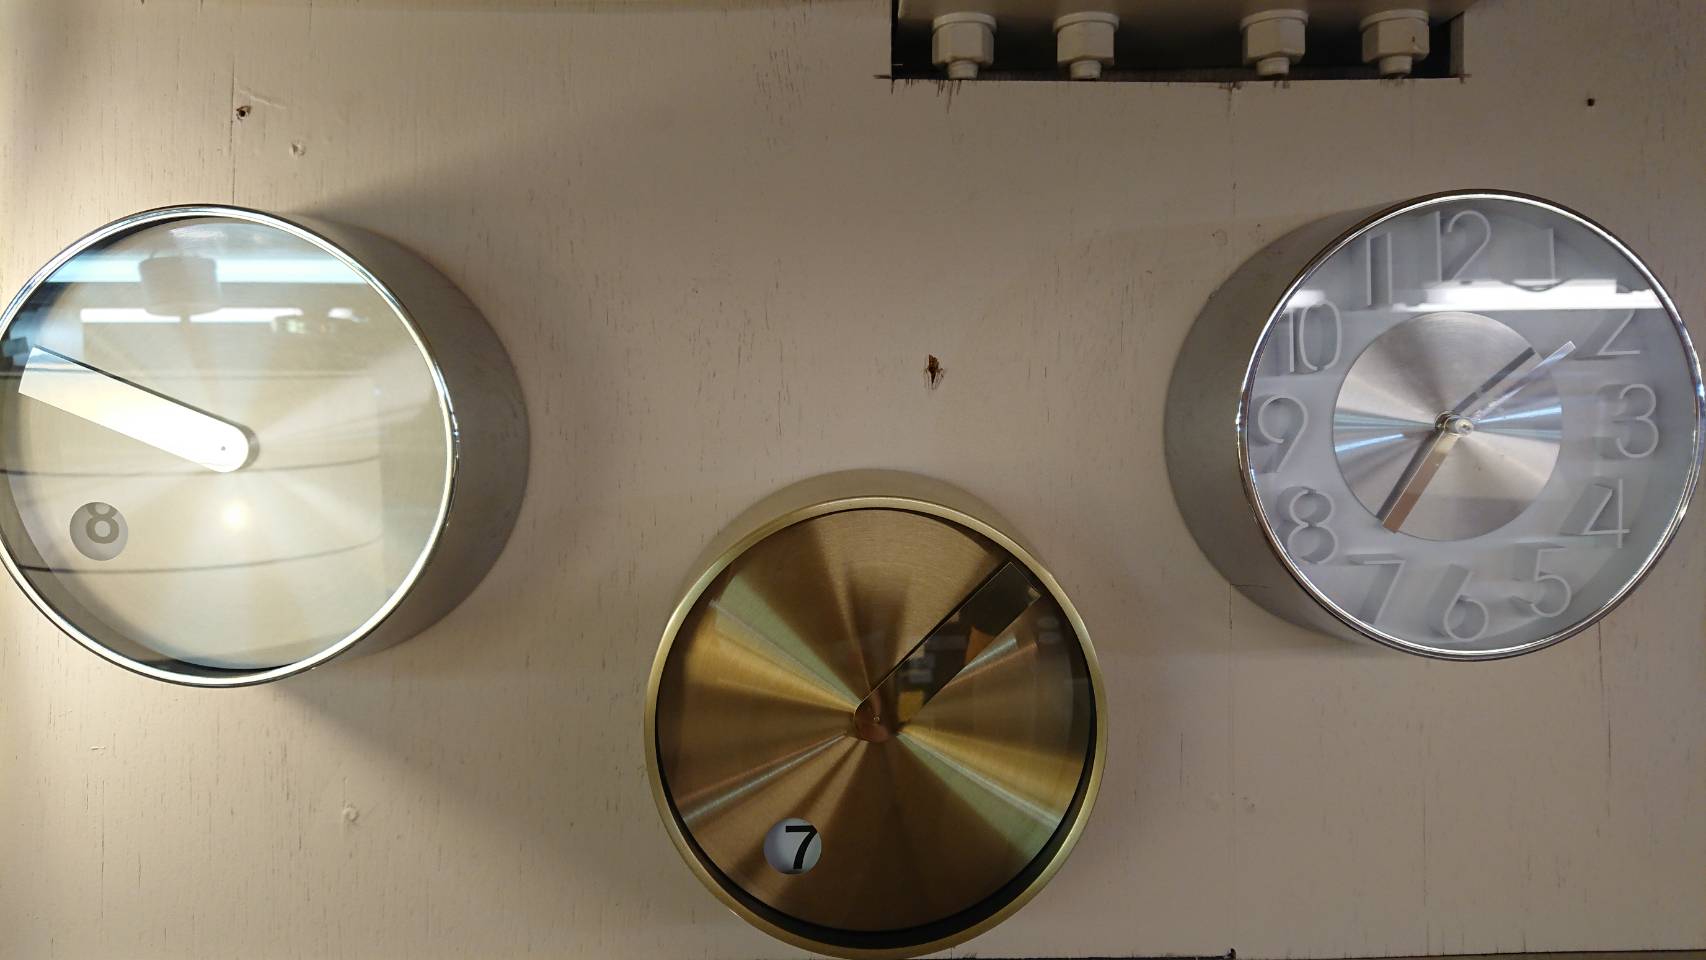 壁掛け 時計 種類豊富 電波時計 かわいい シンプル デザイン時計 おしゃれ 掛け時計 入荷しました 愛知と岐阜のリサイクルショップ 再良市場